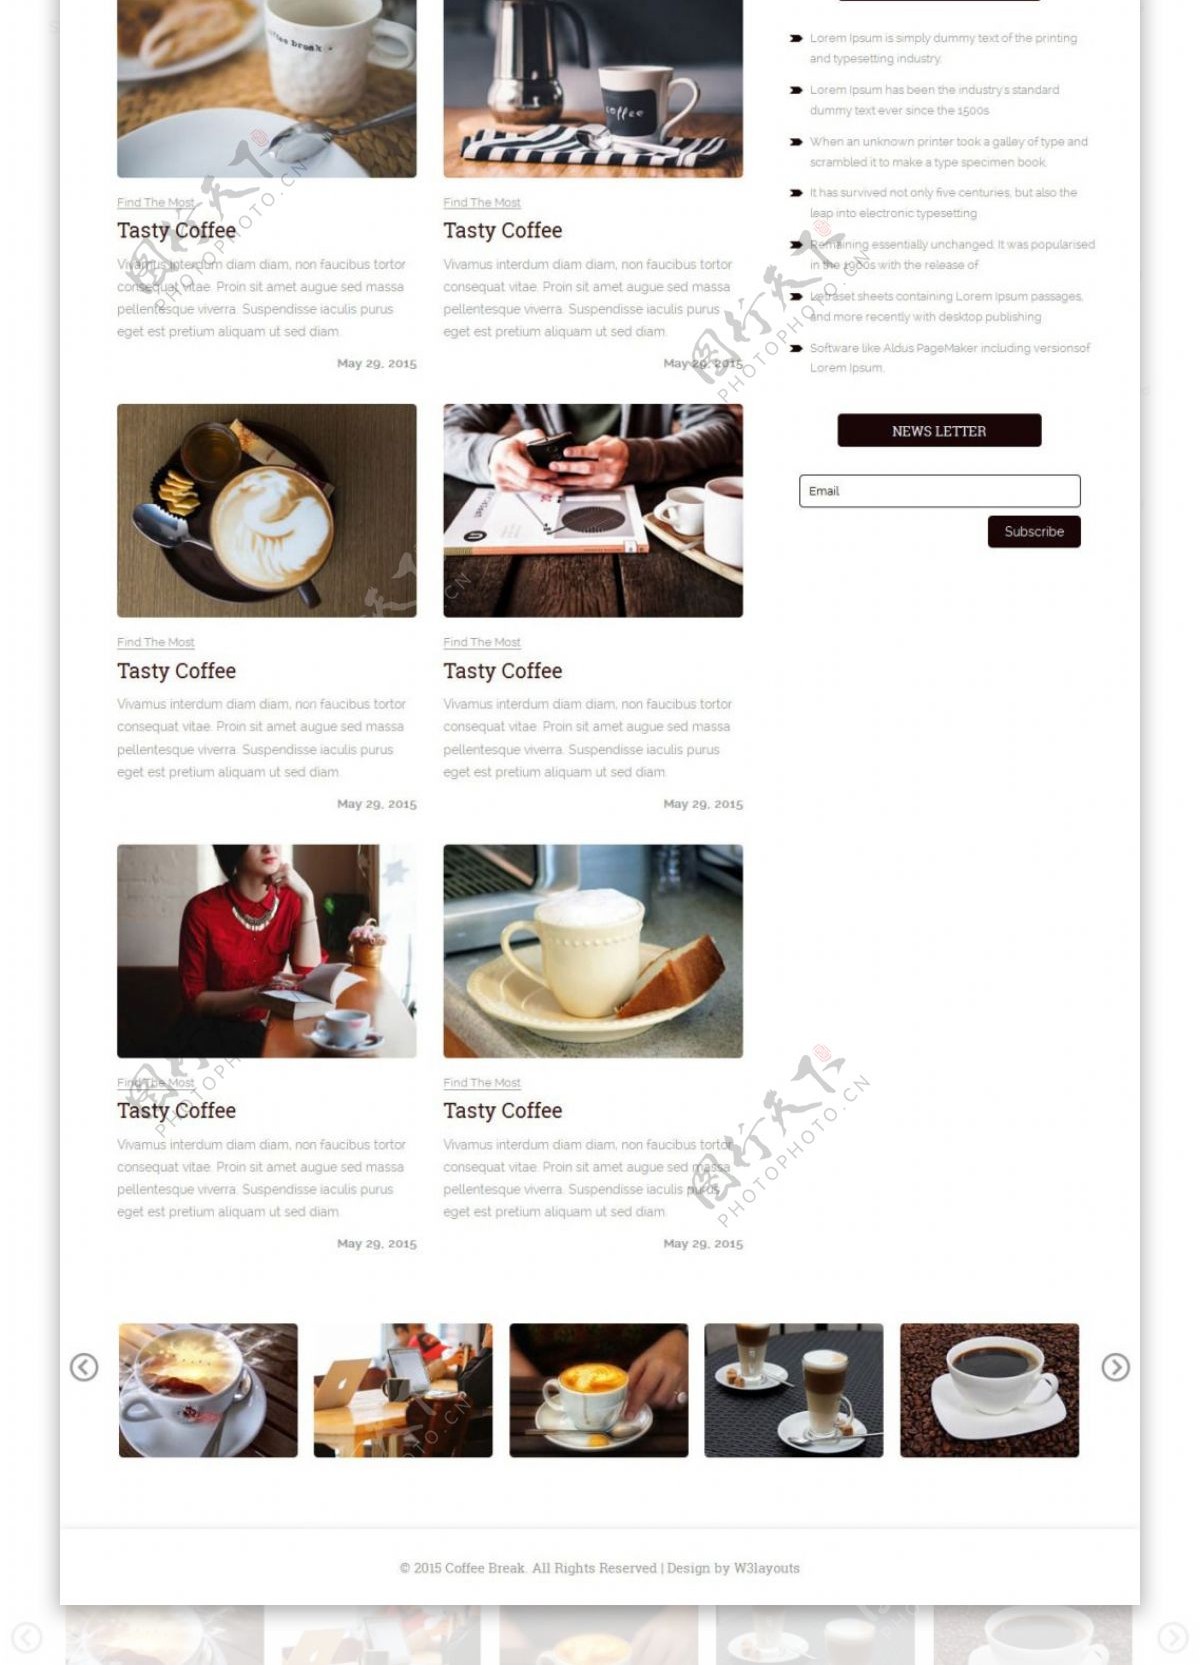 咖啡茶点日志响应式网页模板